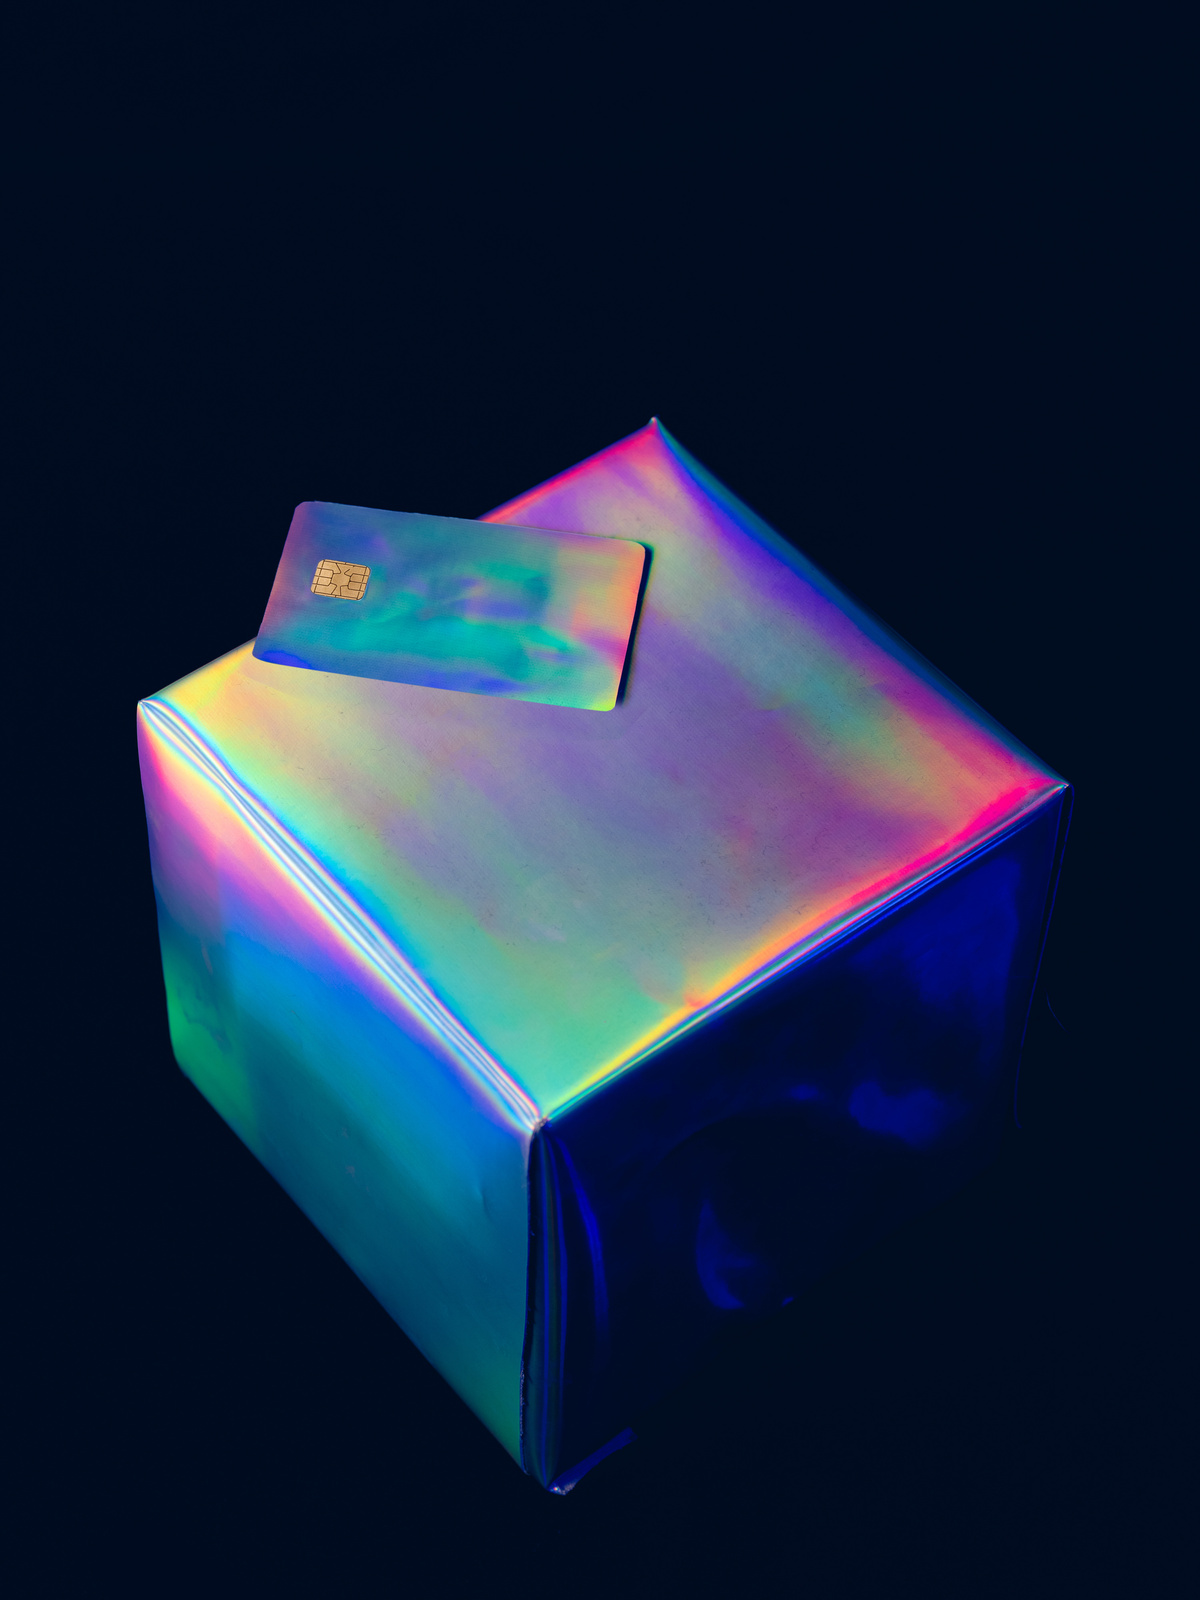 Holo AI Holographic Cube and Card